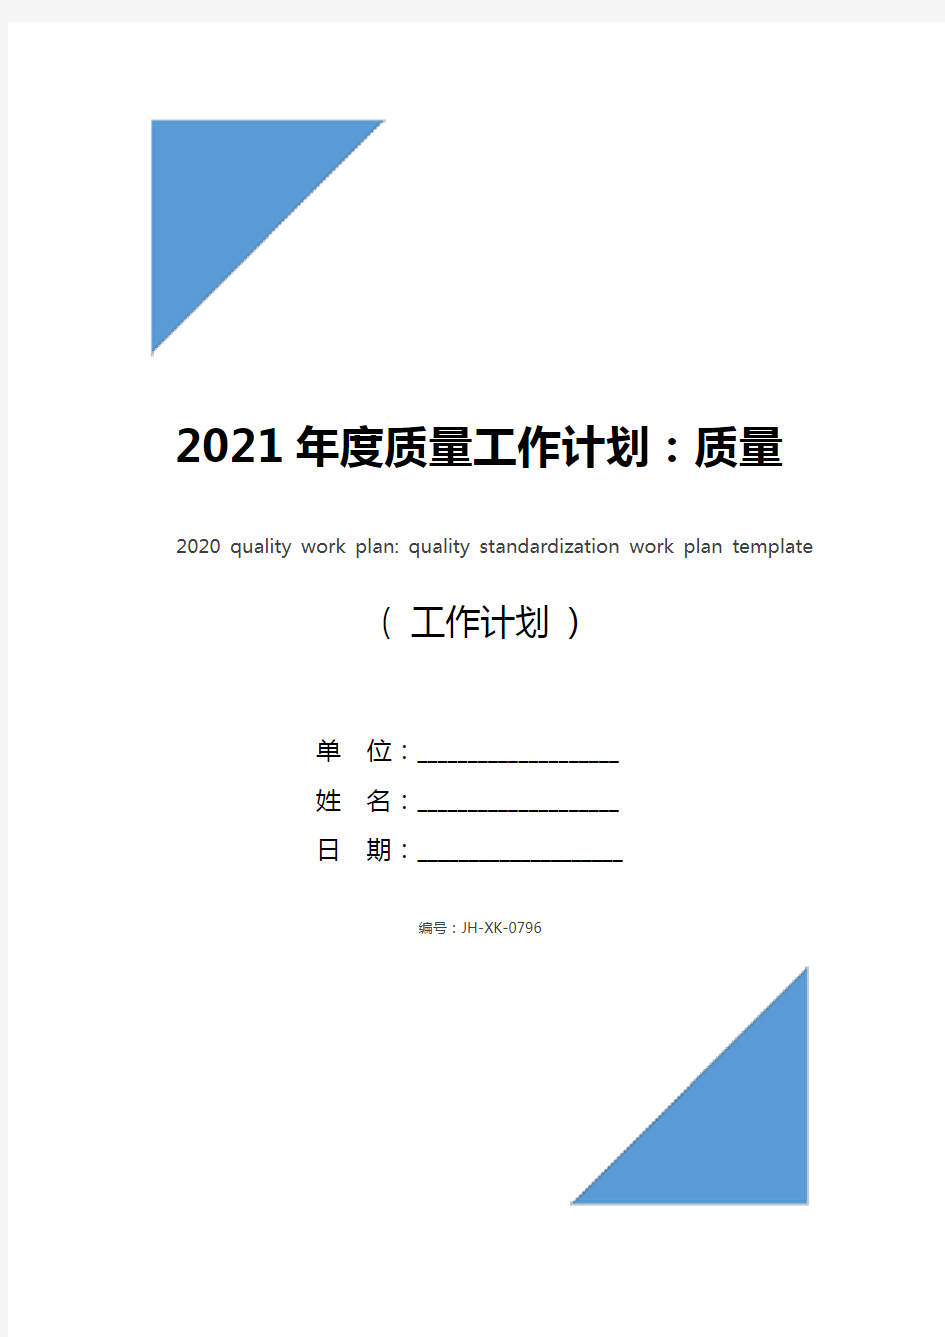 2021年度质量工作计划：质量标准化工作计划模板(最新版)